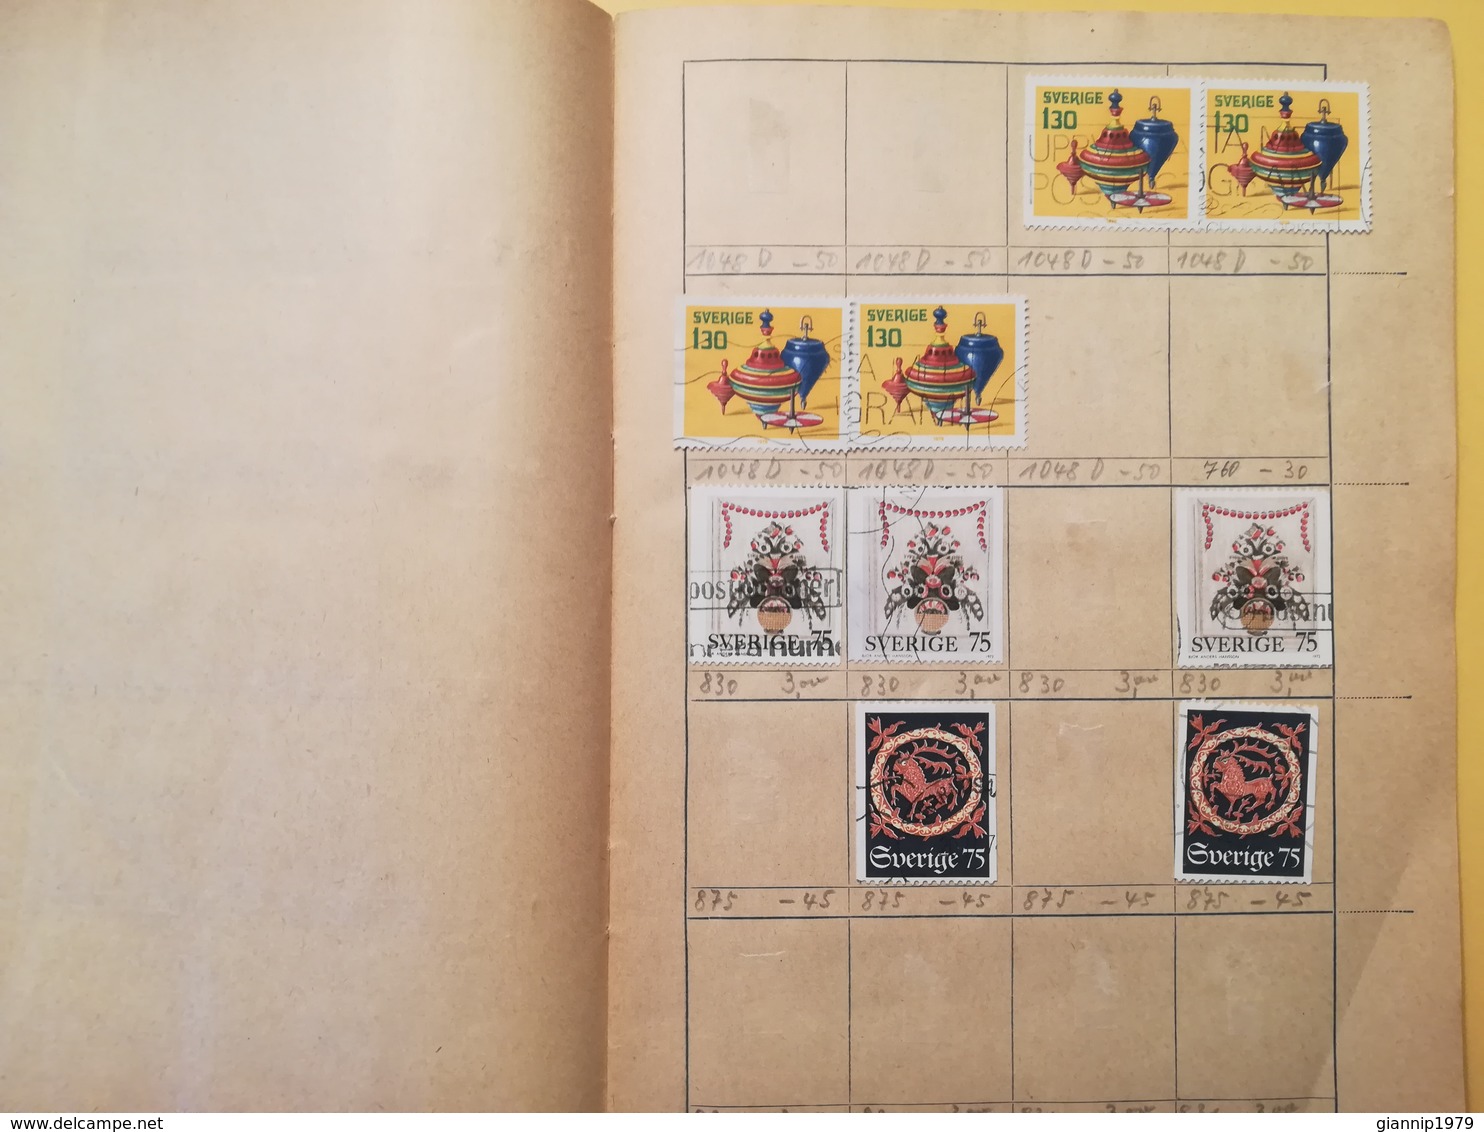 LIBRETTO FRANCOBOLLI STAMPS AUSWAHLHEFT OPUSCOLO BOOK LOTTO COLLEZIONI SVEZIA SVERIGE  OLTRE 160 PEZZI - Collections